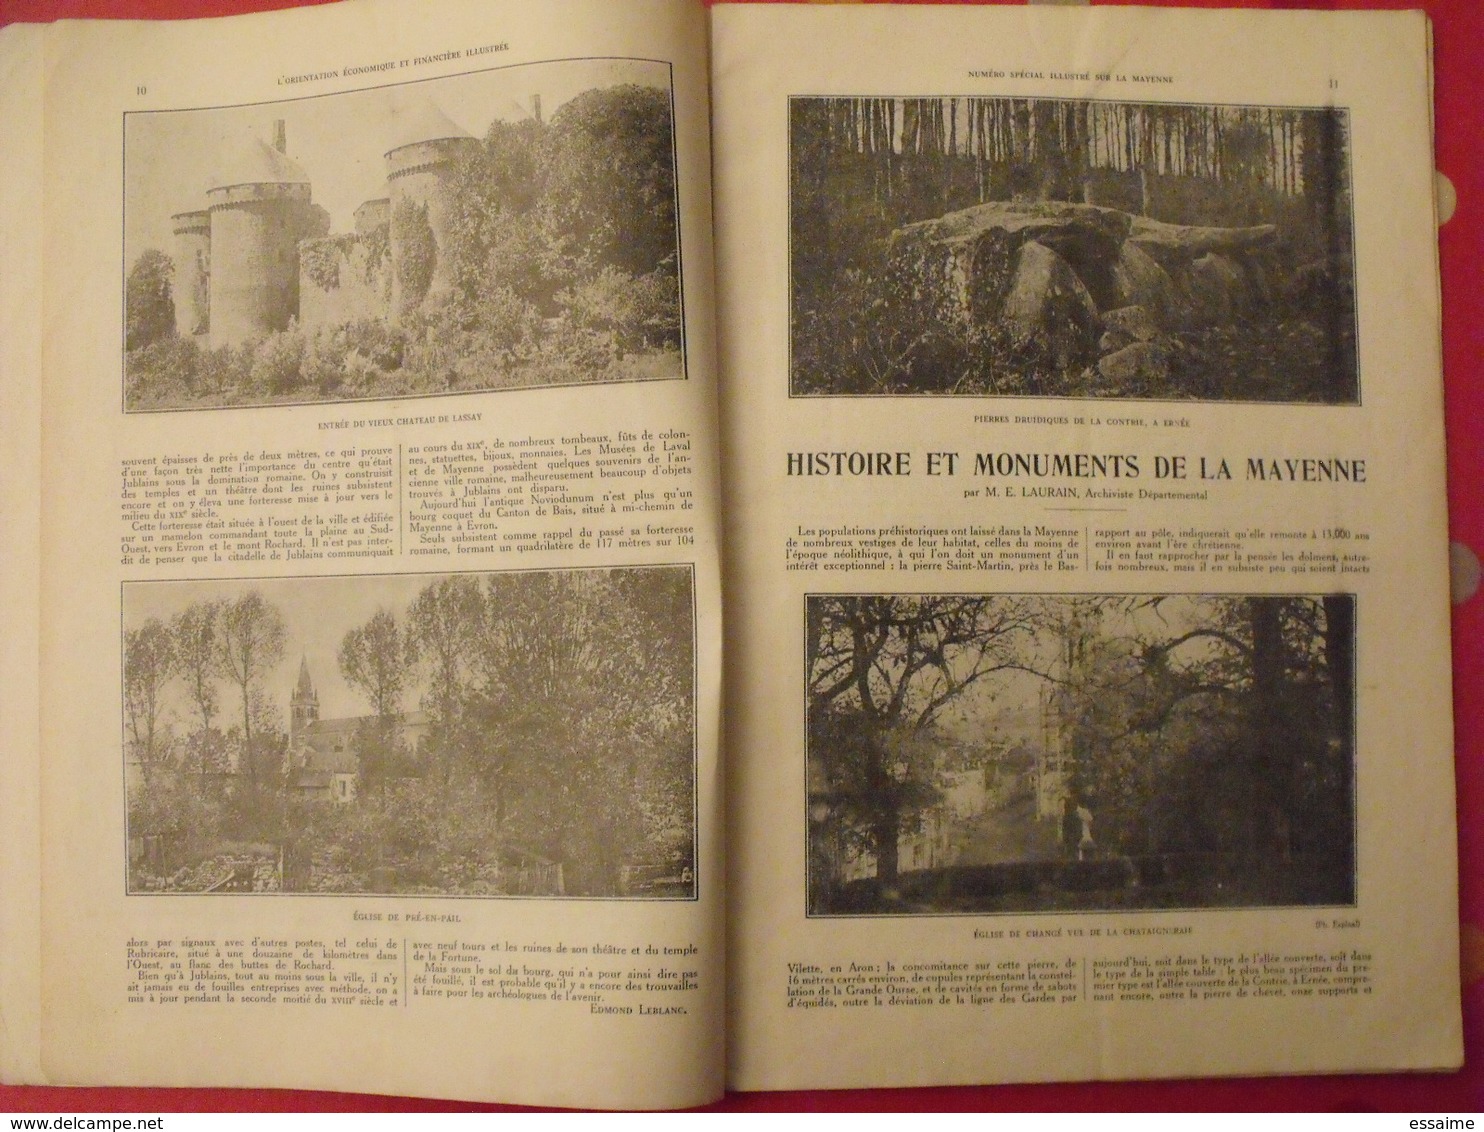 La Mayenne. n° spécial. orientation économique et financière. Mayenne. Laval. chateau. ernée craon. 1933